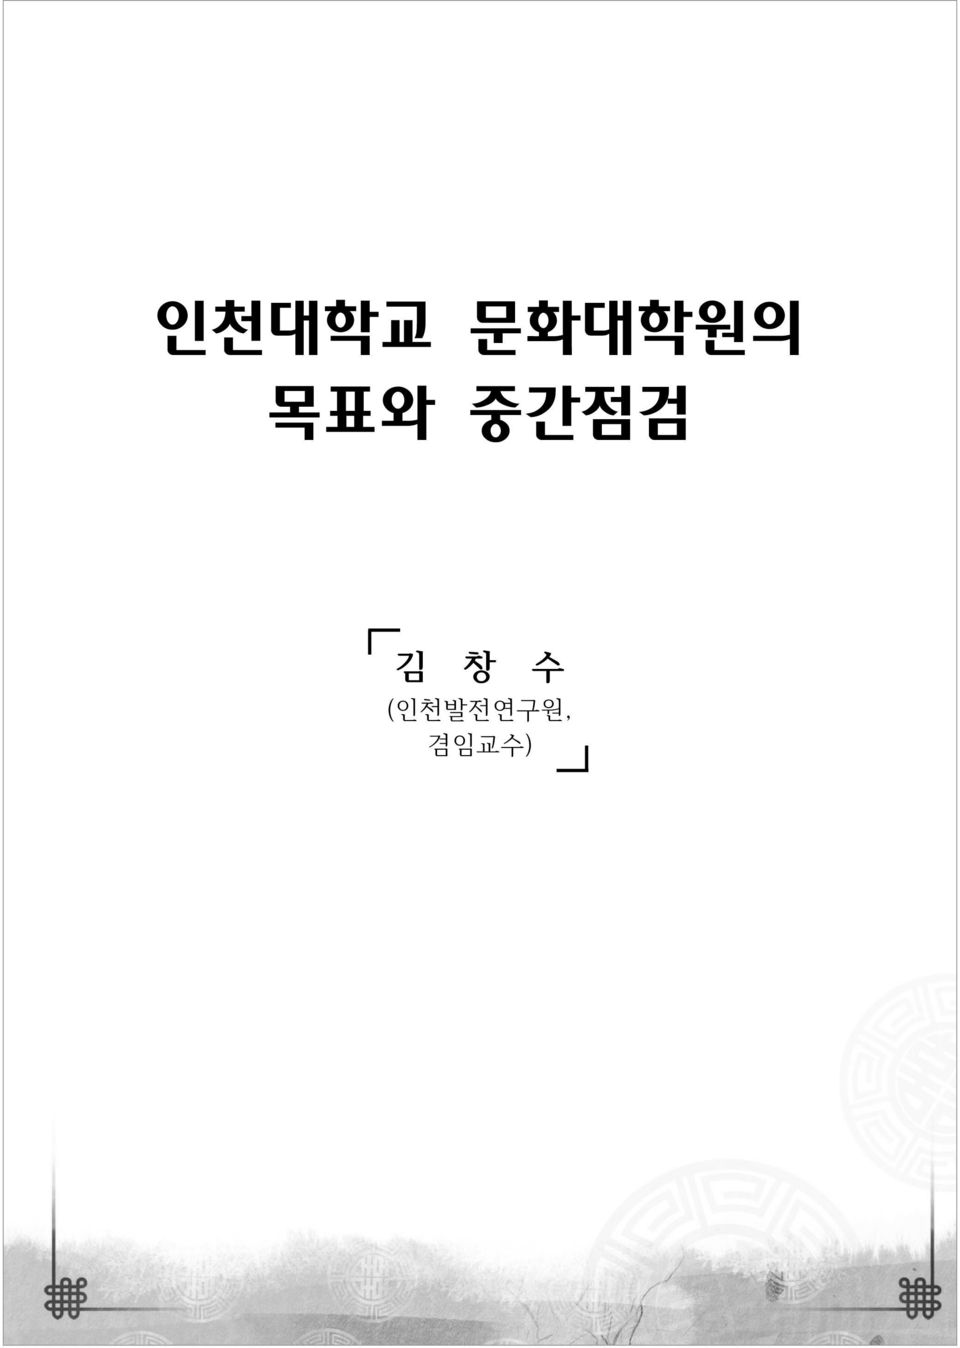 중간점검 김 창 수